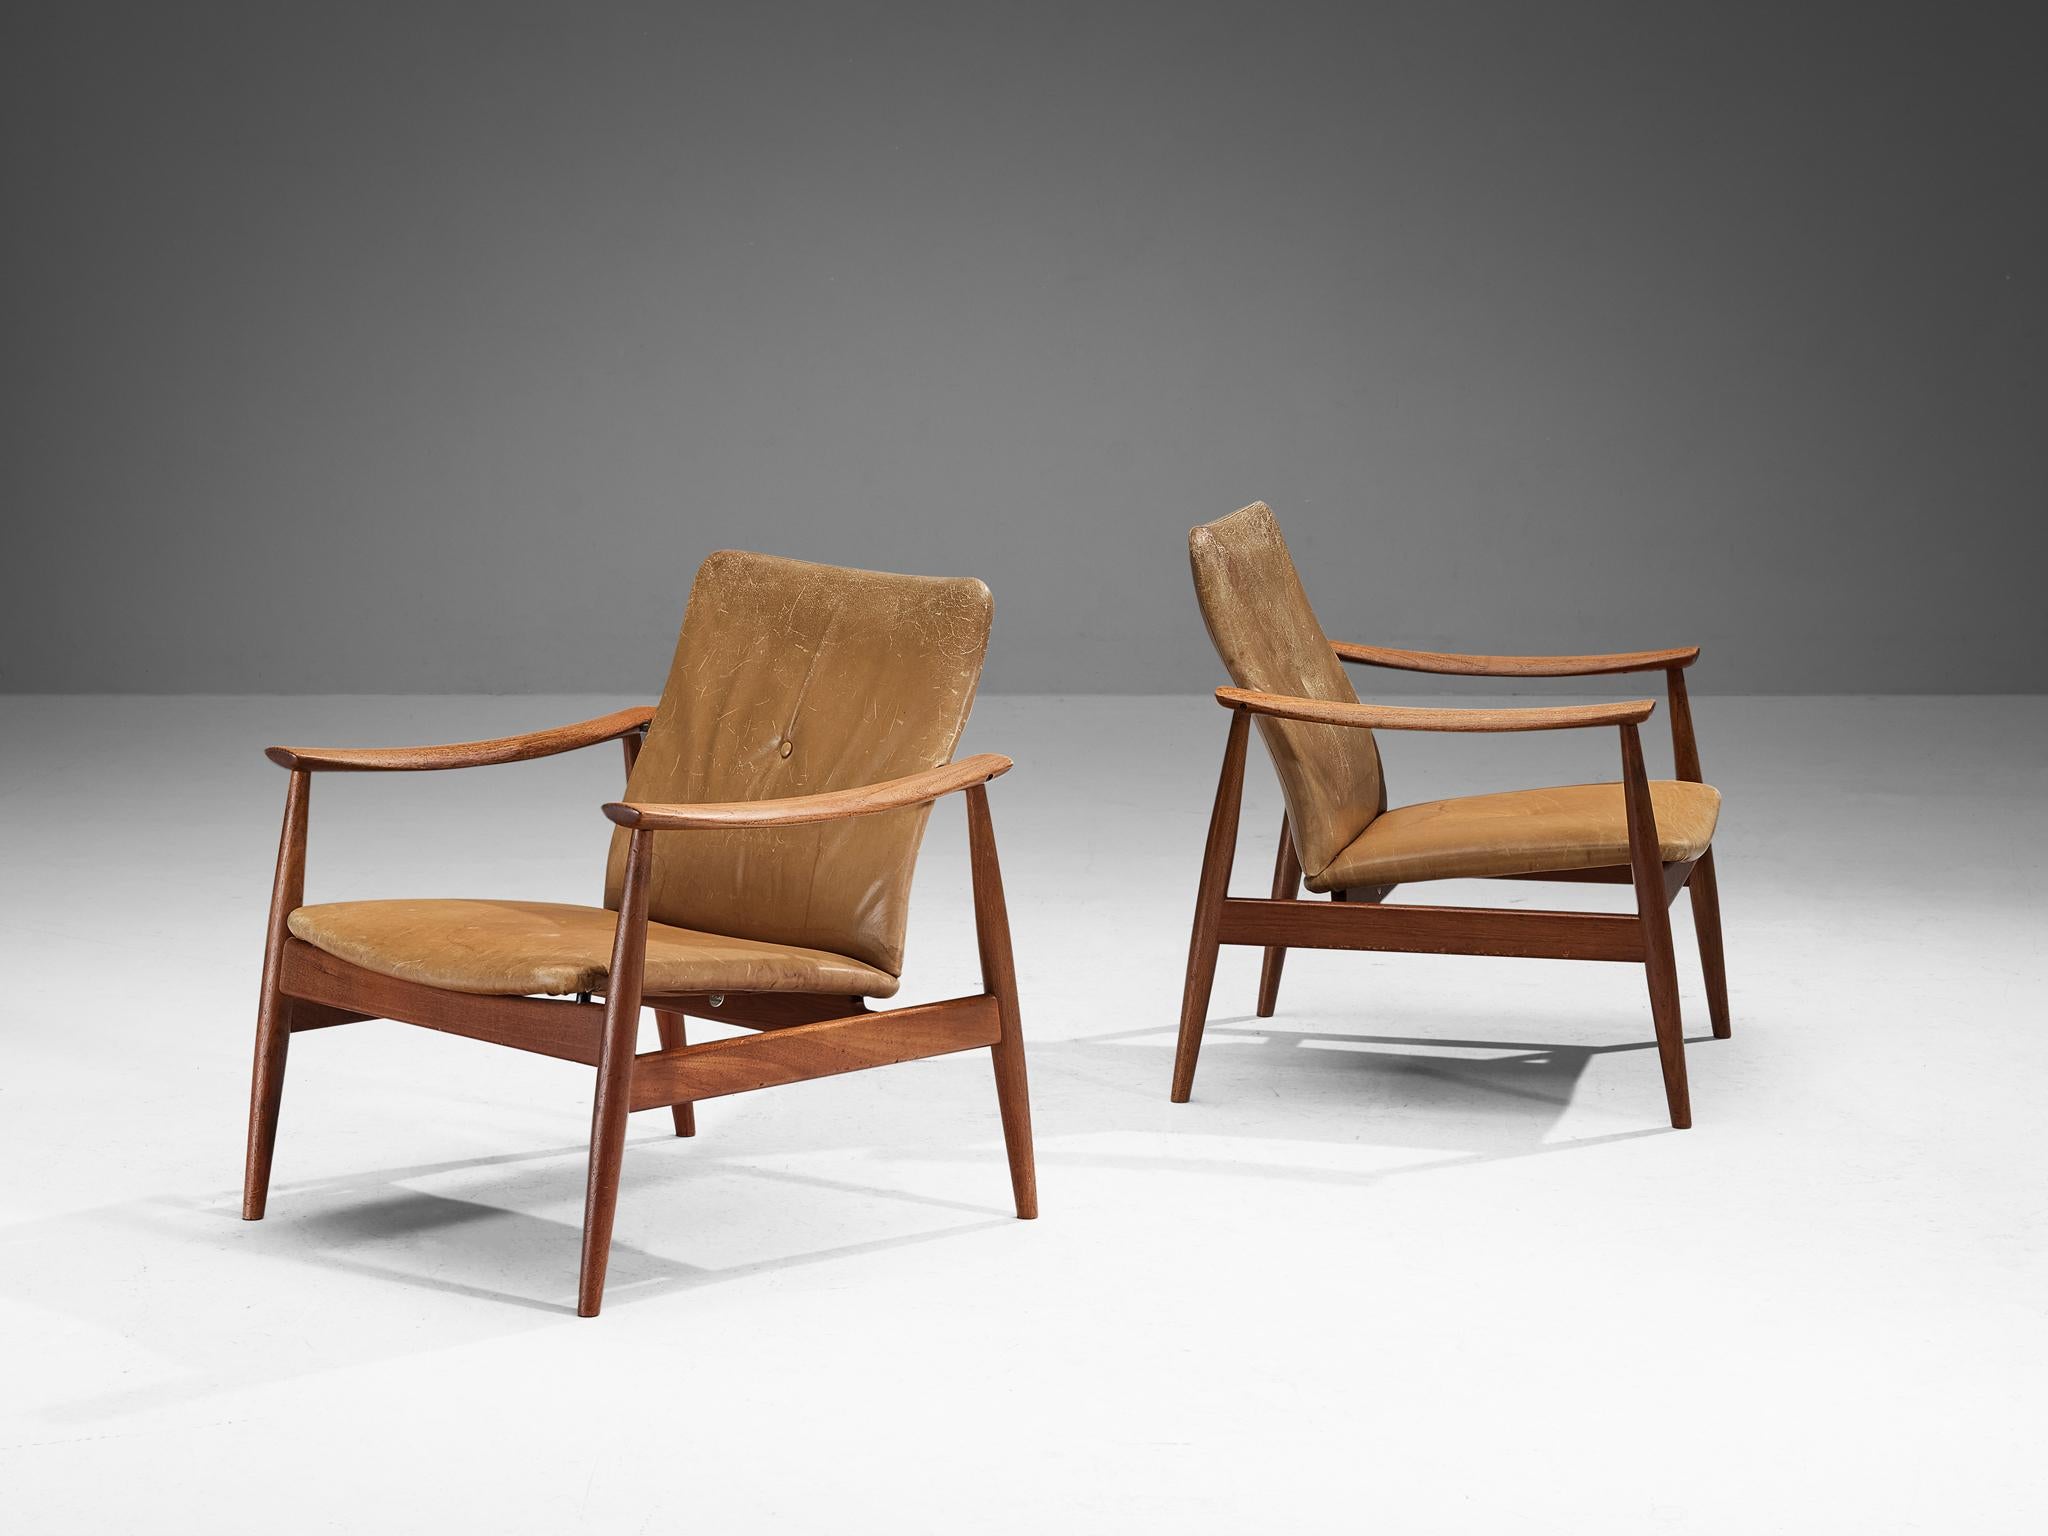 Finn Juhl für France & Søn, Paar Sessel Nr. 138, Teakholz, Leder, Dänemark, Entwurf ca. 1959

Diese Sessel wurden 1959 vom dänischen Meisterdesigner Finn Juhl entworfen. Der schlanke, organische Rahmen aus schönem Teakholz mit seinen konisch